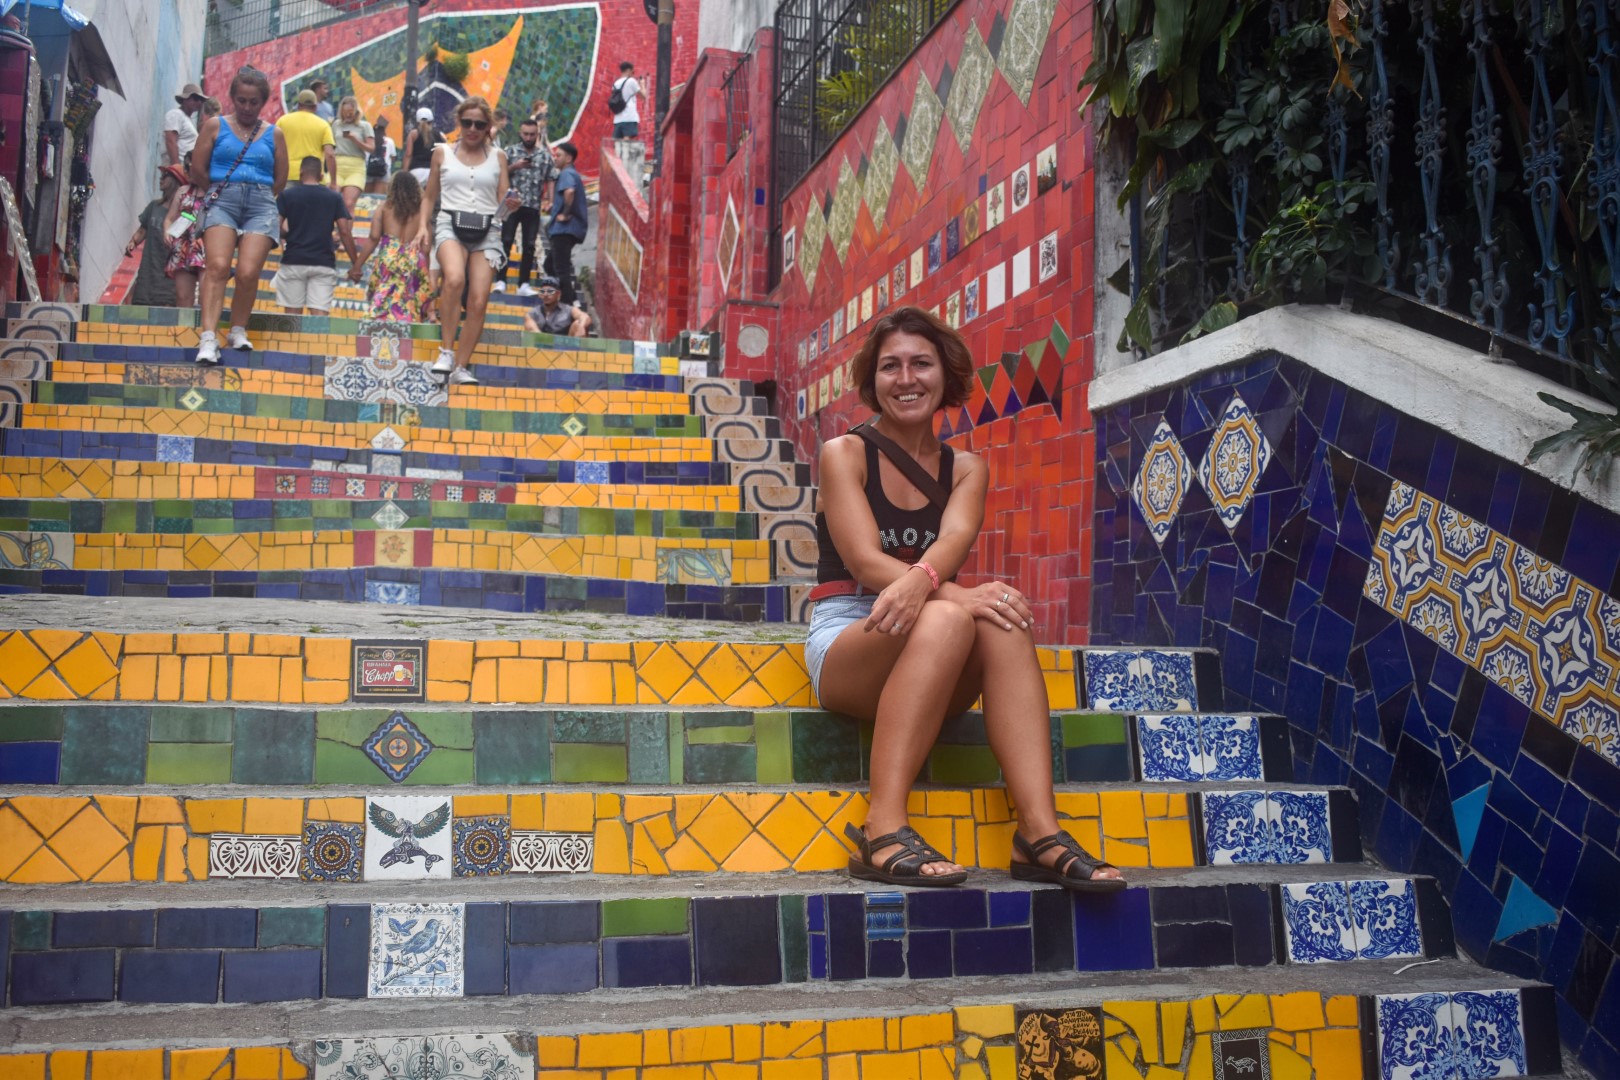 Escadaria Selarón - Rua Manuel Carneiro - Santa Teresa, Rio de Janeiro - State of Rio de Janeiro